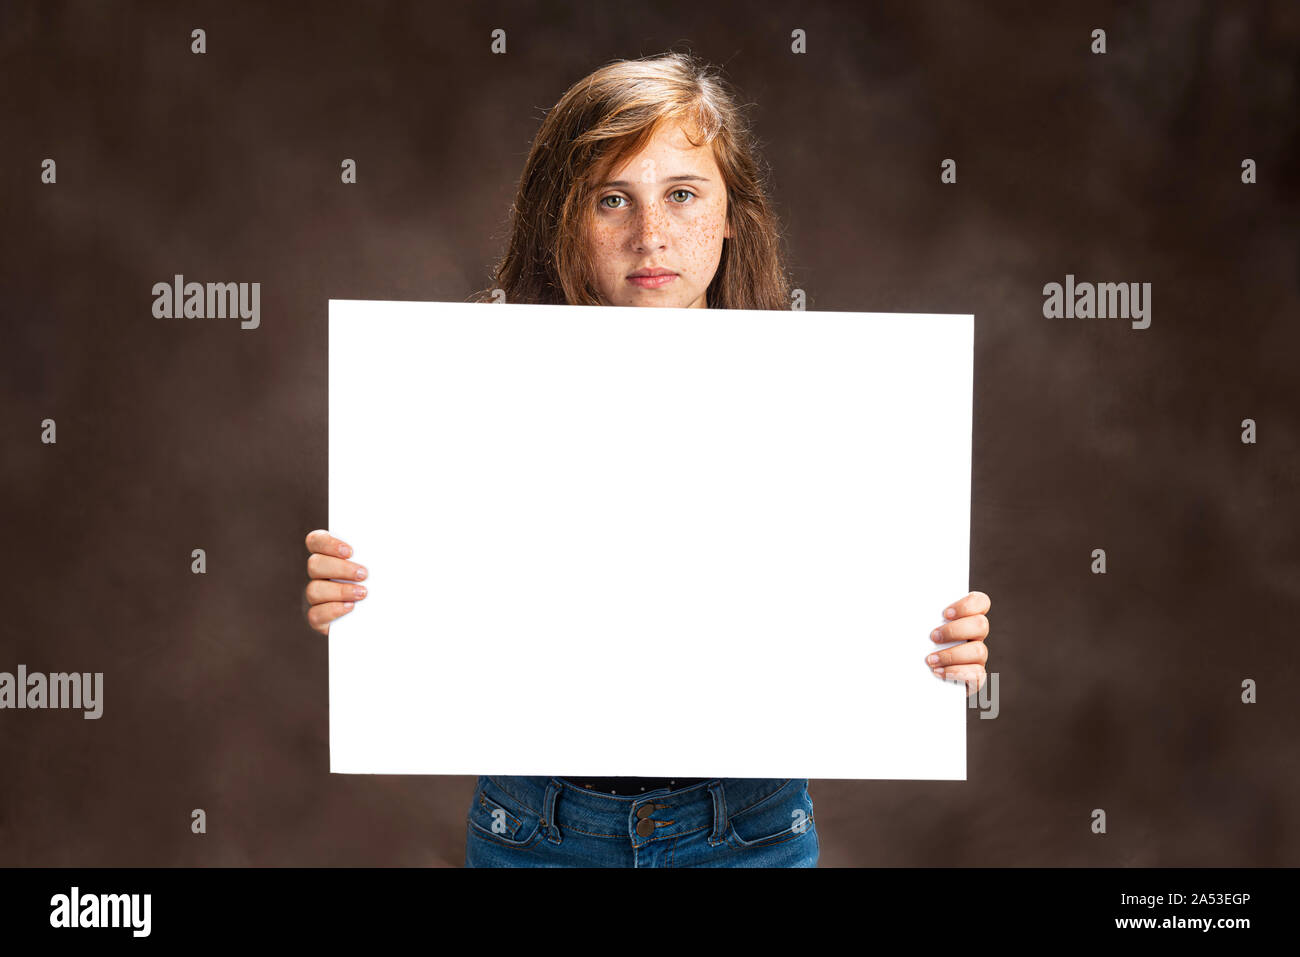 Horizontale studio Schuß eines vor - jugendlich Mädchen mit schönen Augen Holding ein leeres weißes Schild. Sie hat einen ernsten Gesichtsausdruck. Braunen Hintergrund Stockfoto